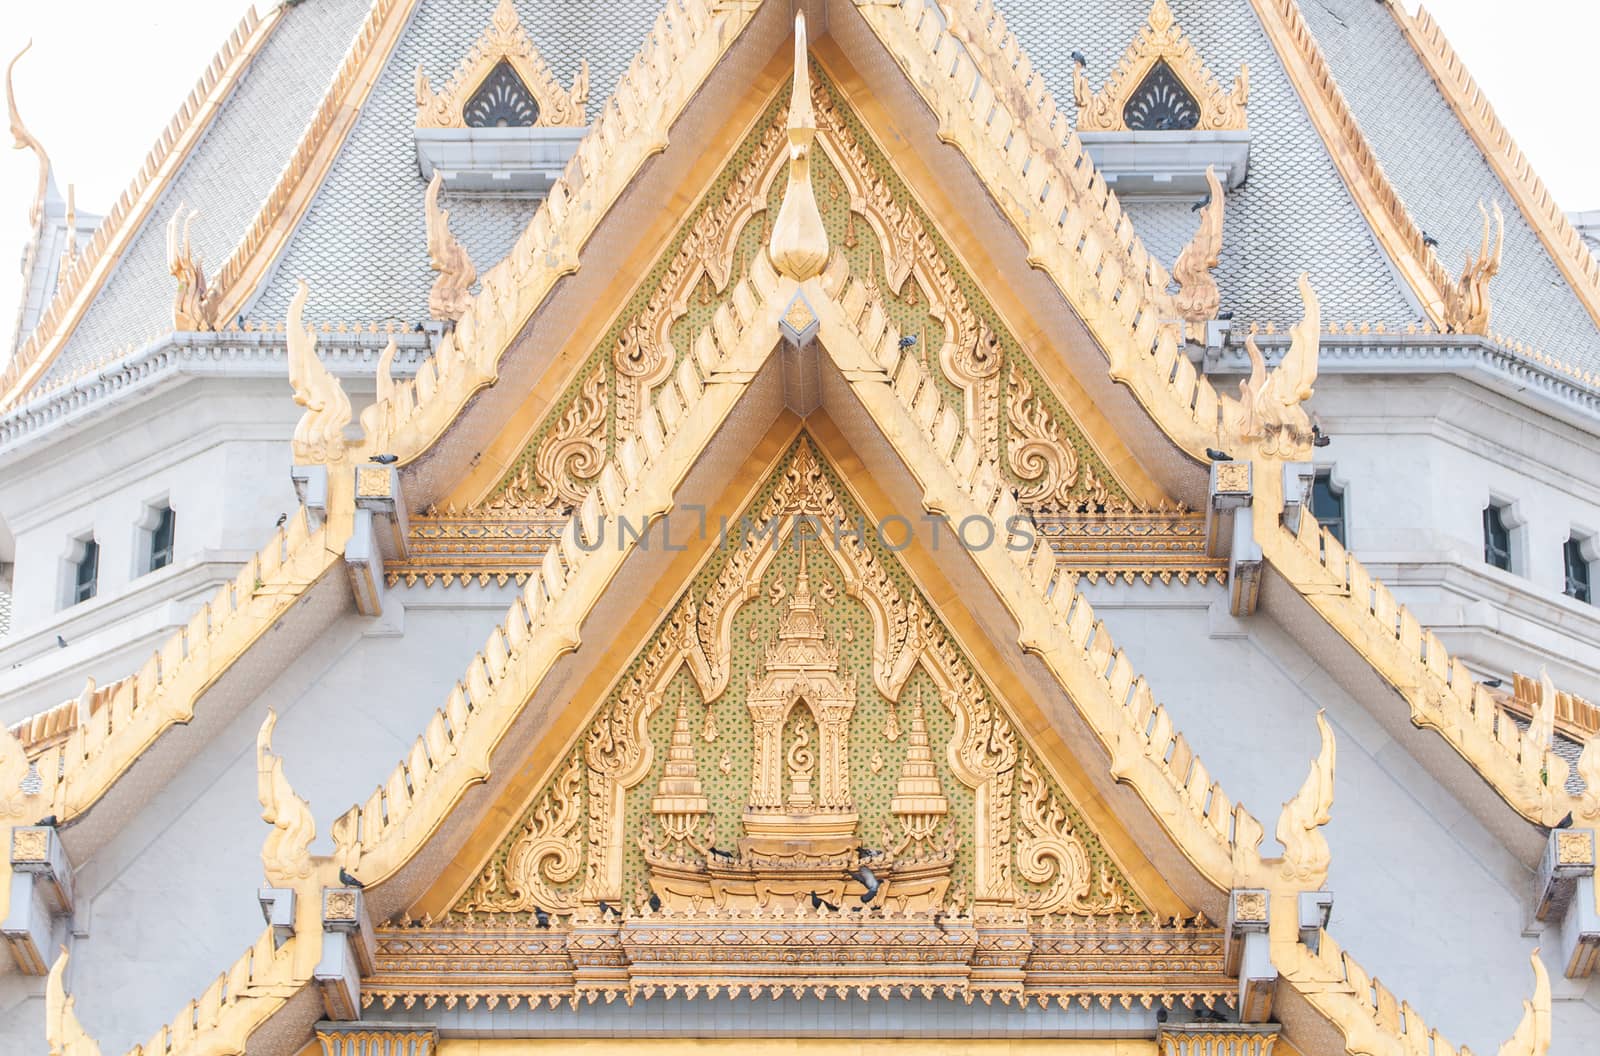 Roof detail of Wat Sothon by Sorapop